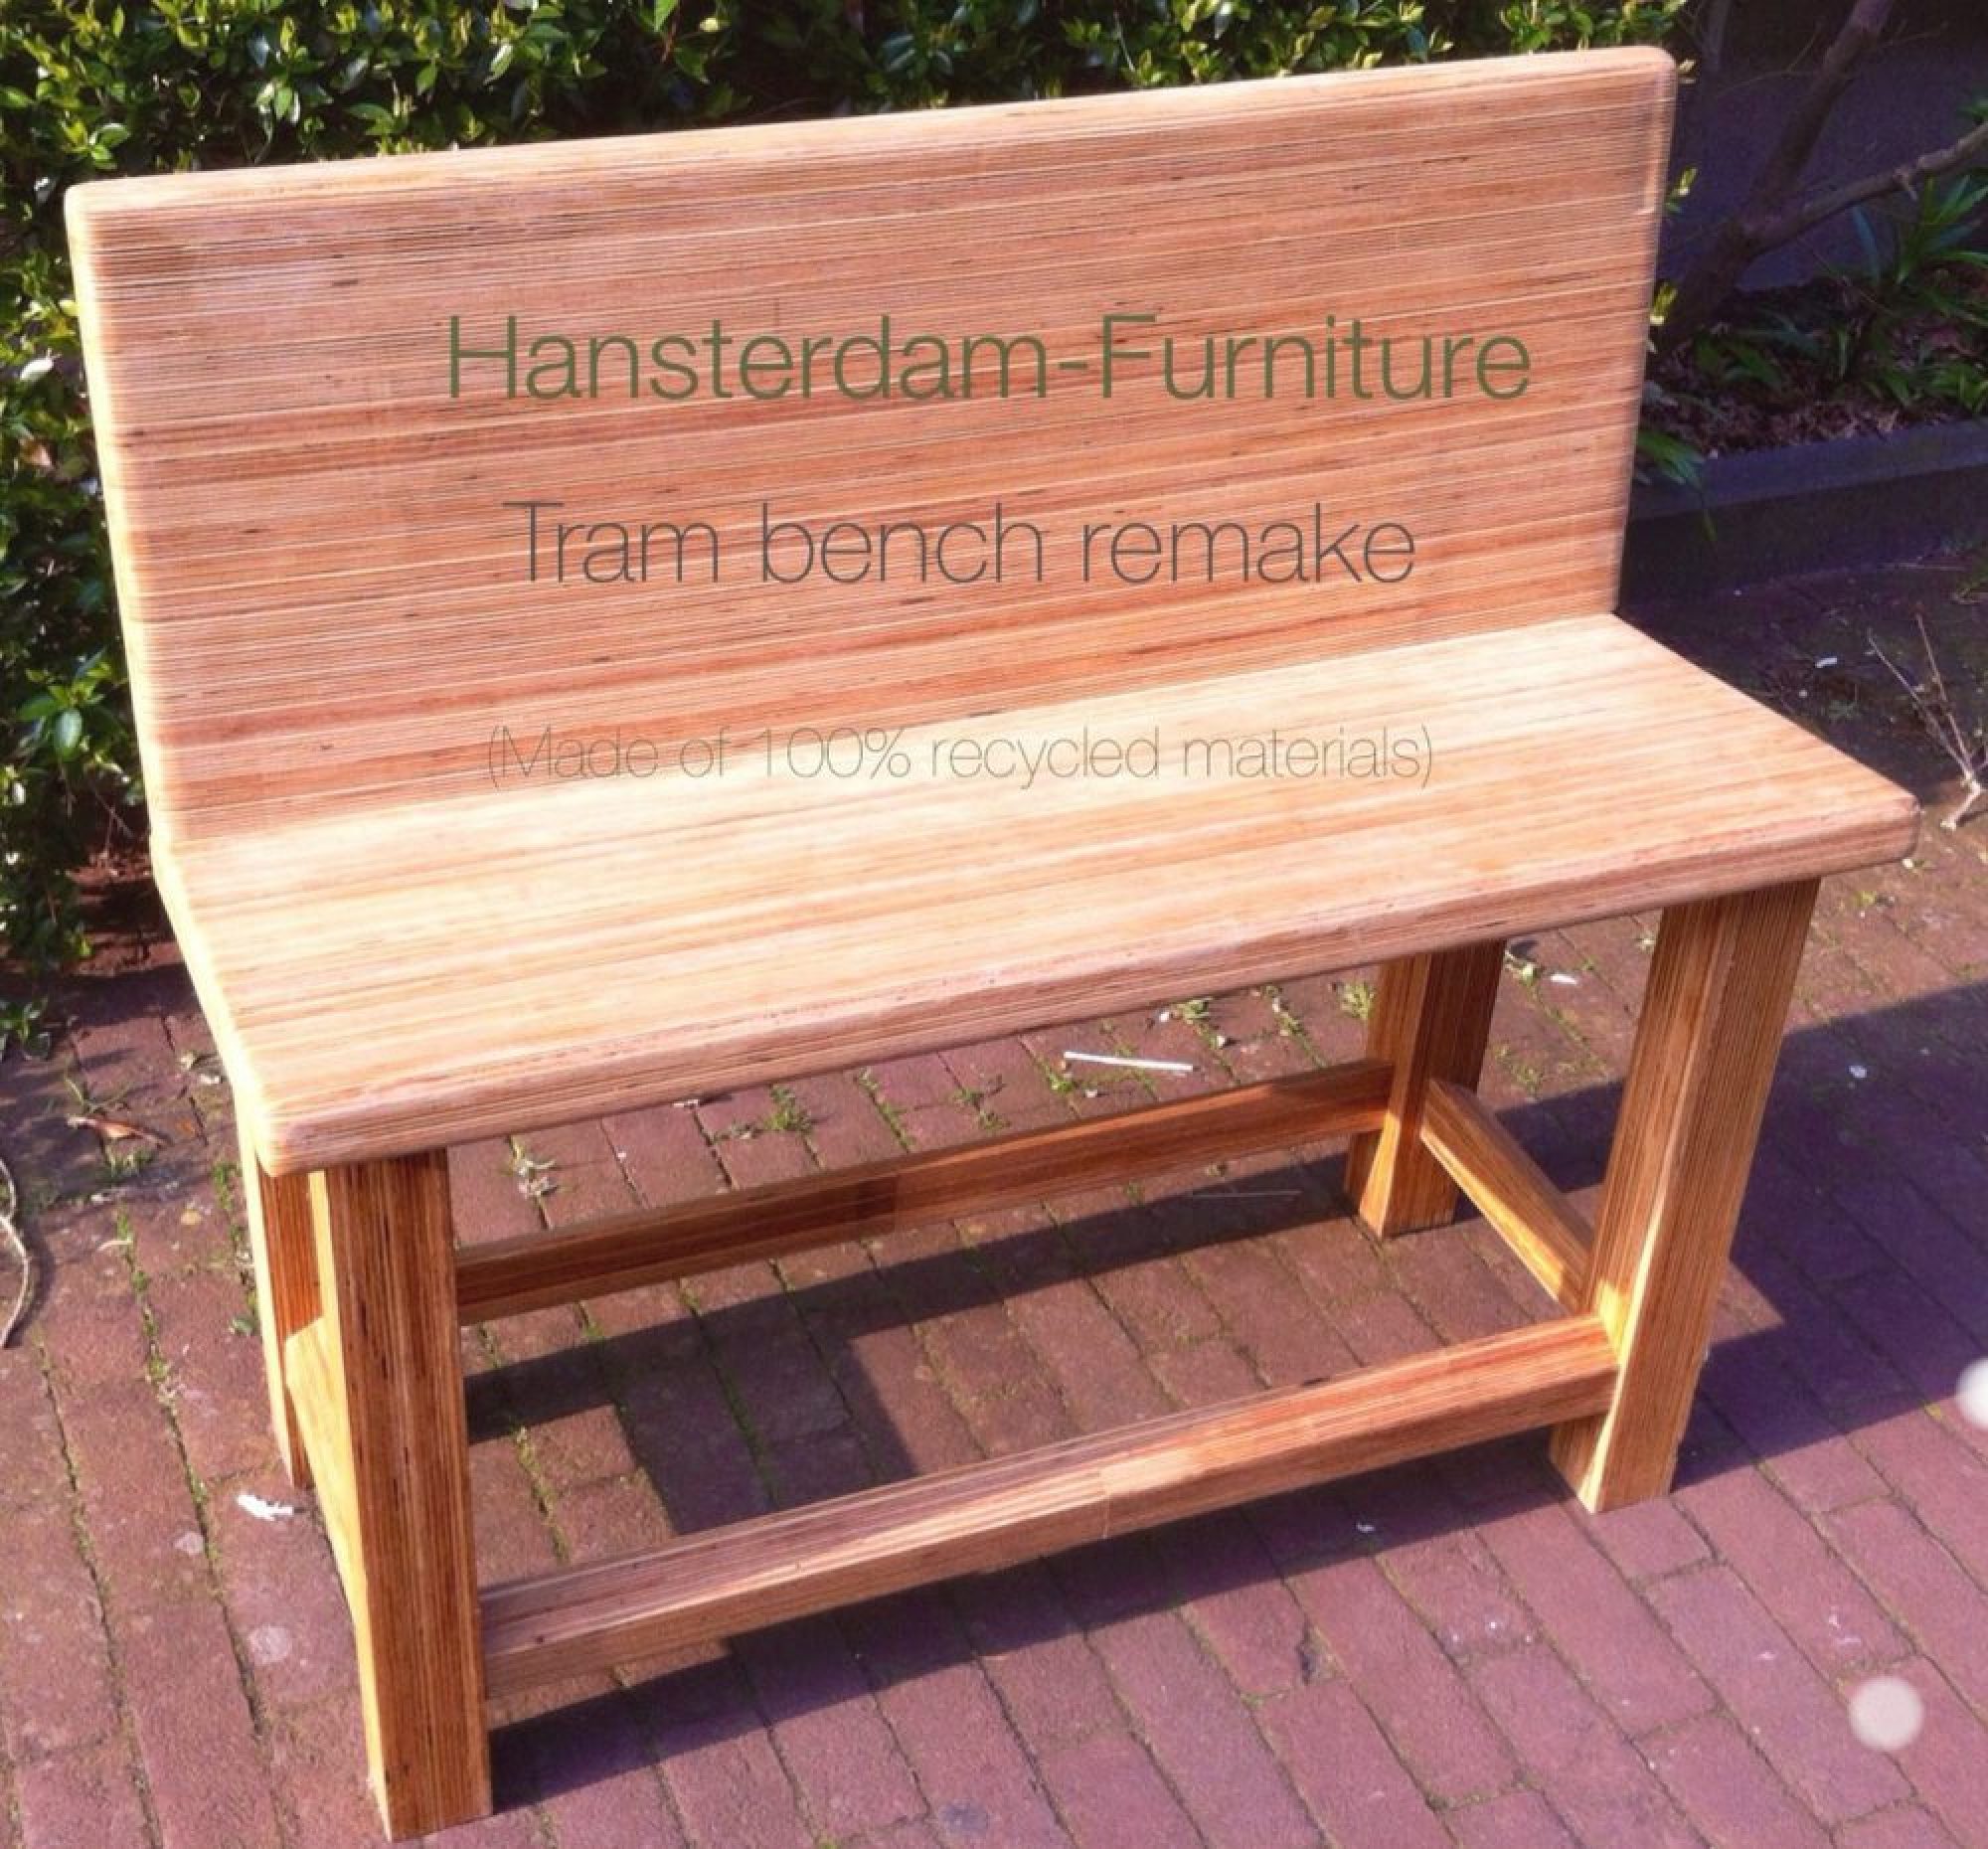 Hansterdam Furniture